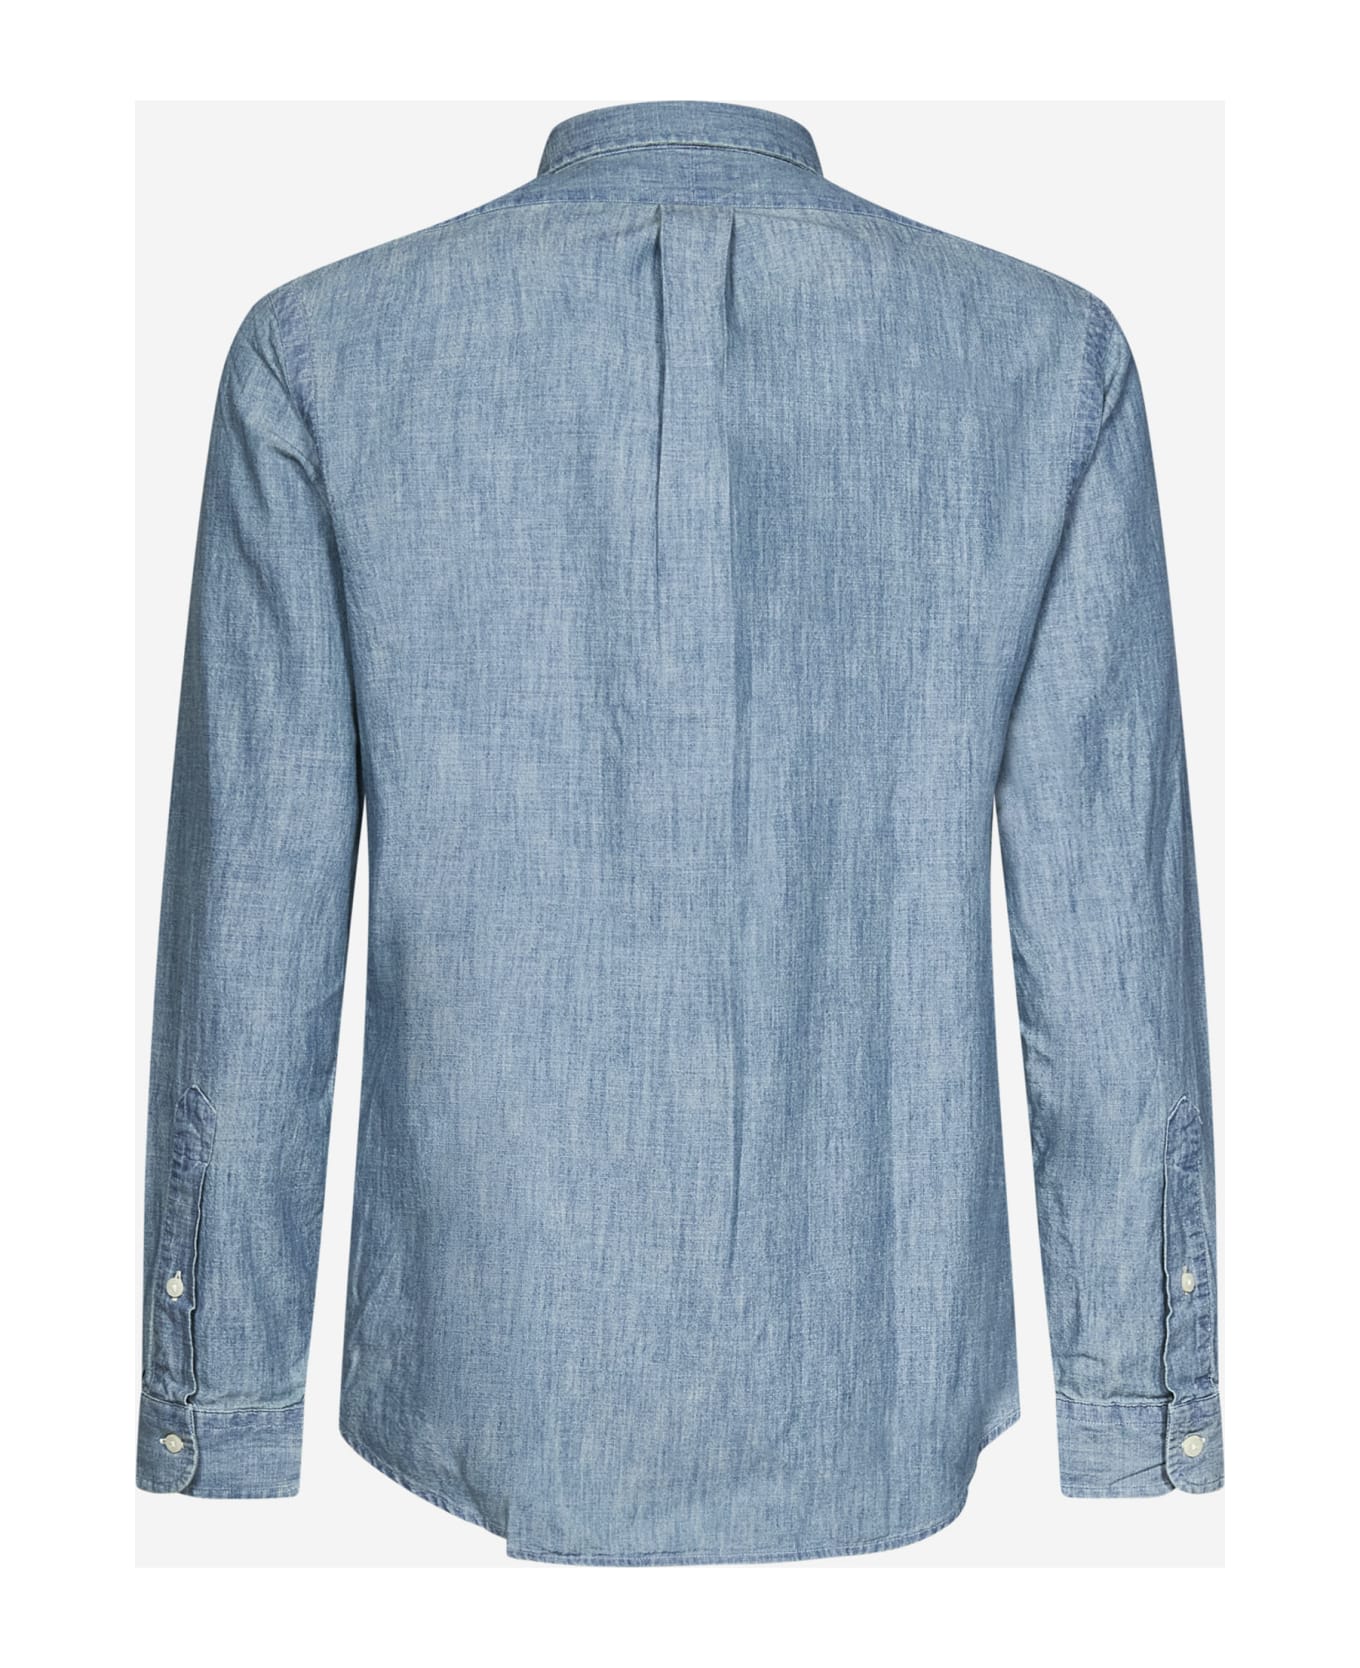 Polo Ralph Lauren Shirt Polo Ralph Lauren - LIGHT BLUE シャツ